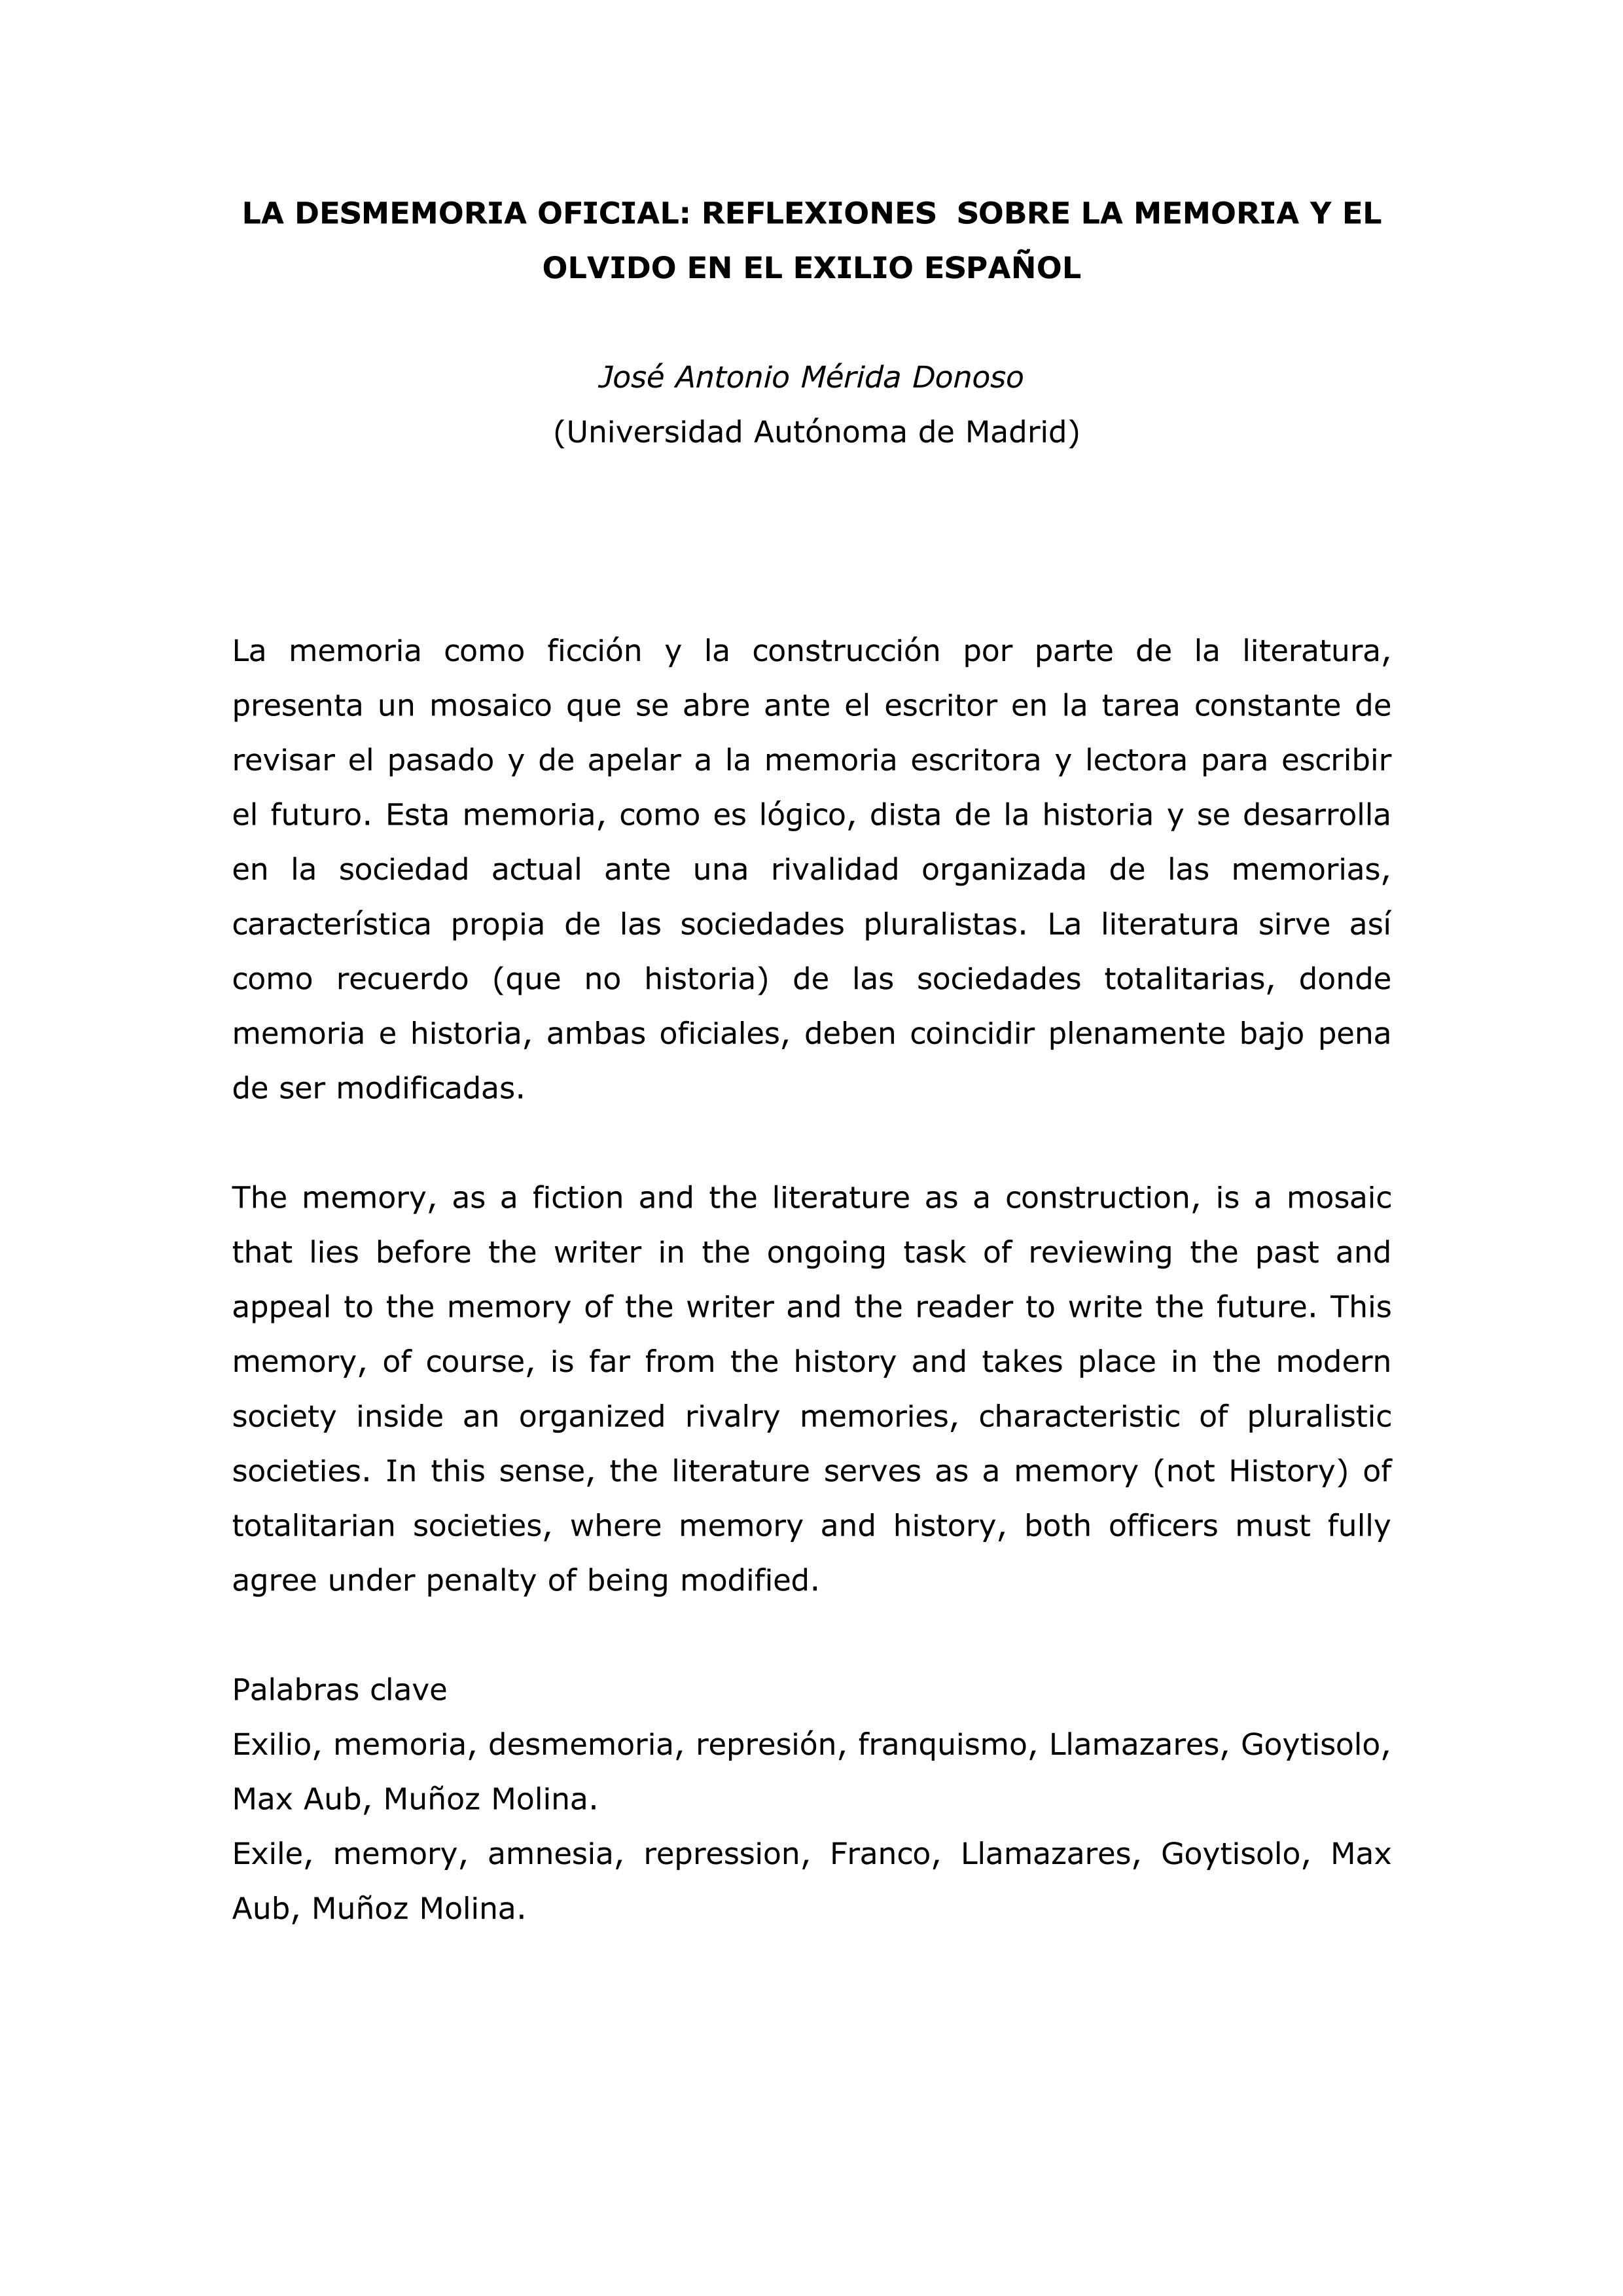 La desmemoria oficial: reflexiones sobre la memoria y el olvido en el exilio español